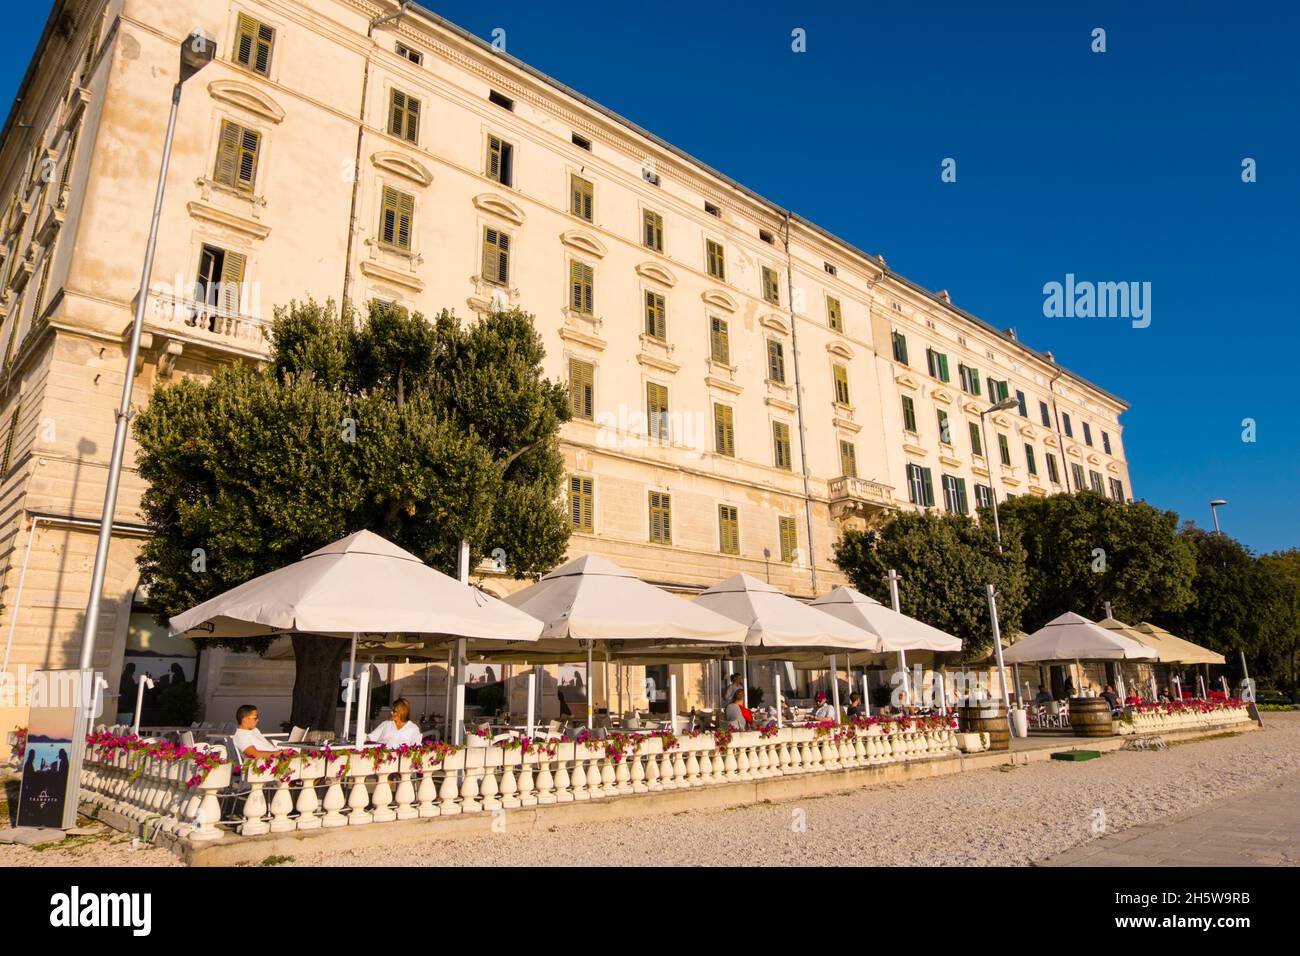 Hotel Zagreb, Obala kralja Petra Krešimira IV, seaside promenade, old town, Zadar, Croatia Stock Photo